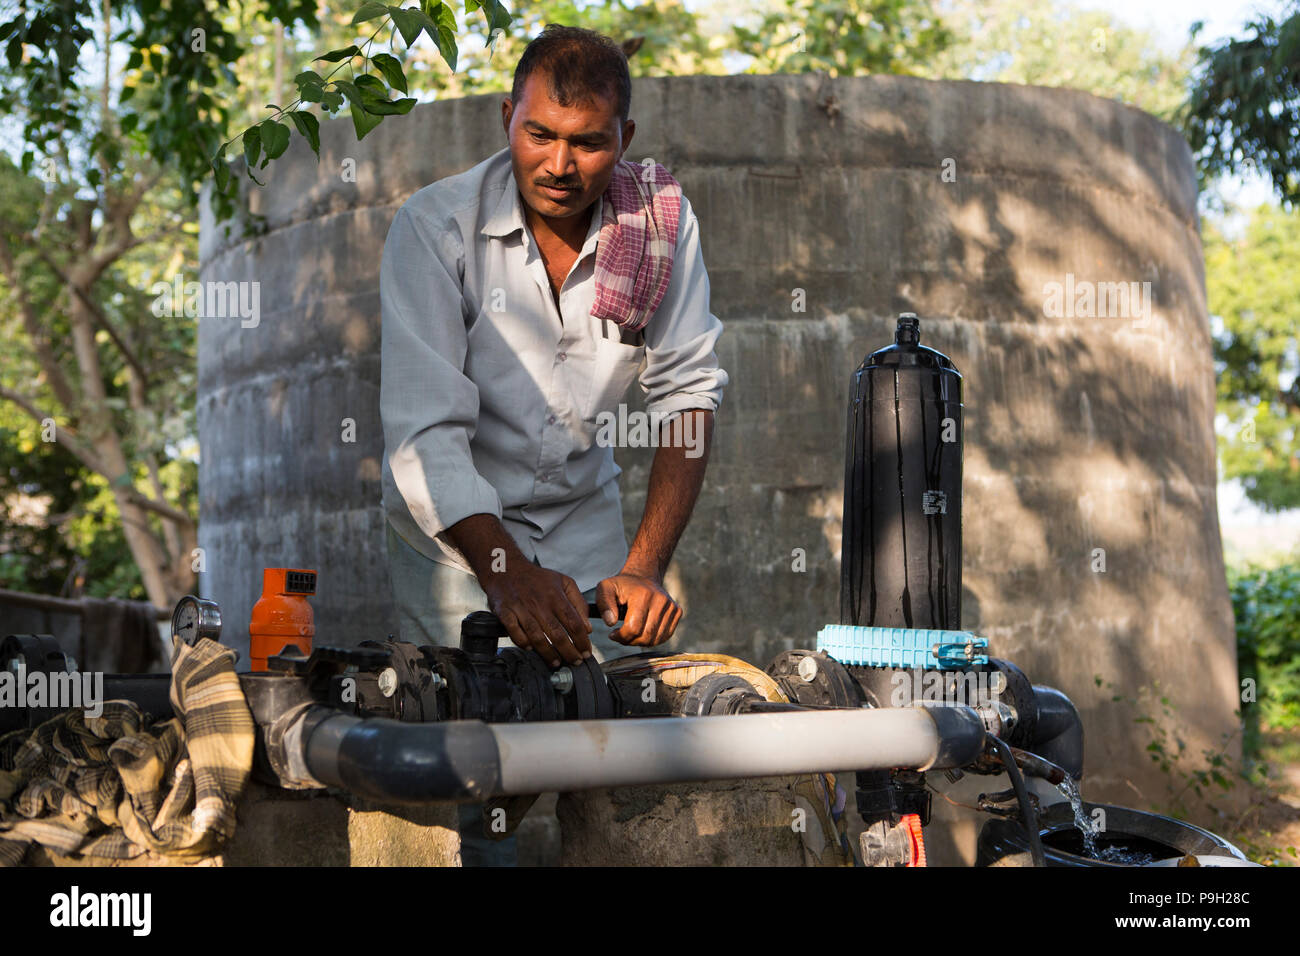 Un agricoltore si accende la pompa della sua nuova irrigazione di gocciolamento sistema che richiede molto meno tempo per l'acqua rispetto al precedente allagare irrigazione. Foto Stock